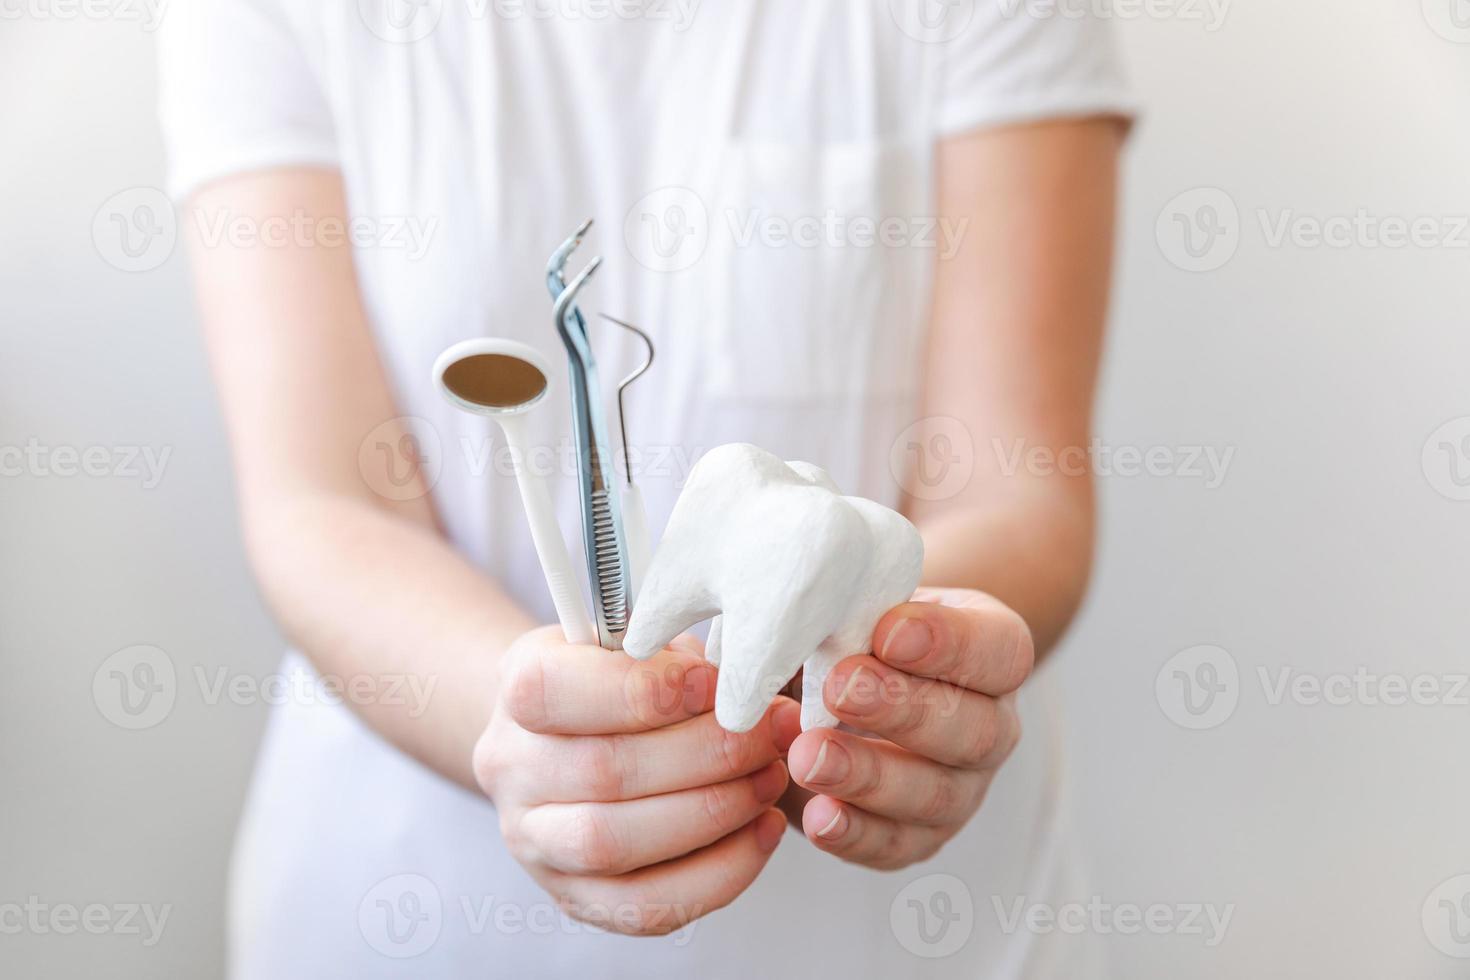 gezondheid tandheelkundige zorg concept. vrouw hand met witte gezonde tand model en tandheelkundige tandarts tools geïsoleerd op een witte achtergrond. tanden bleken, mondhygiëne, tandenrestauratie, tandartsdag. foto